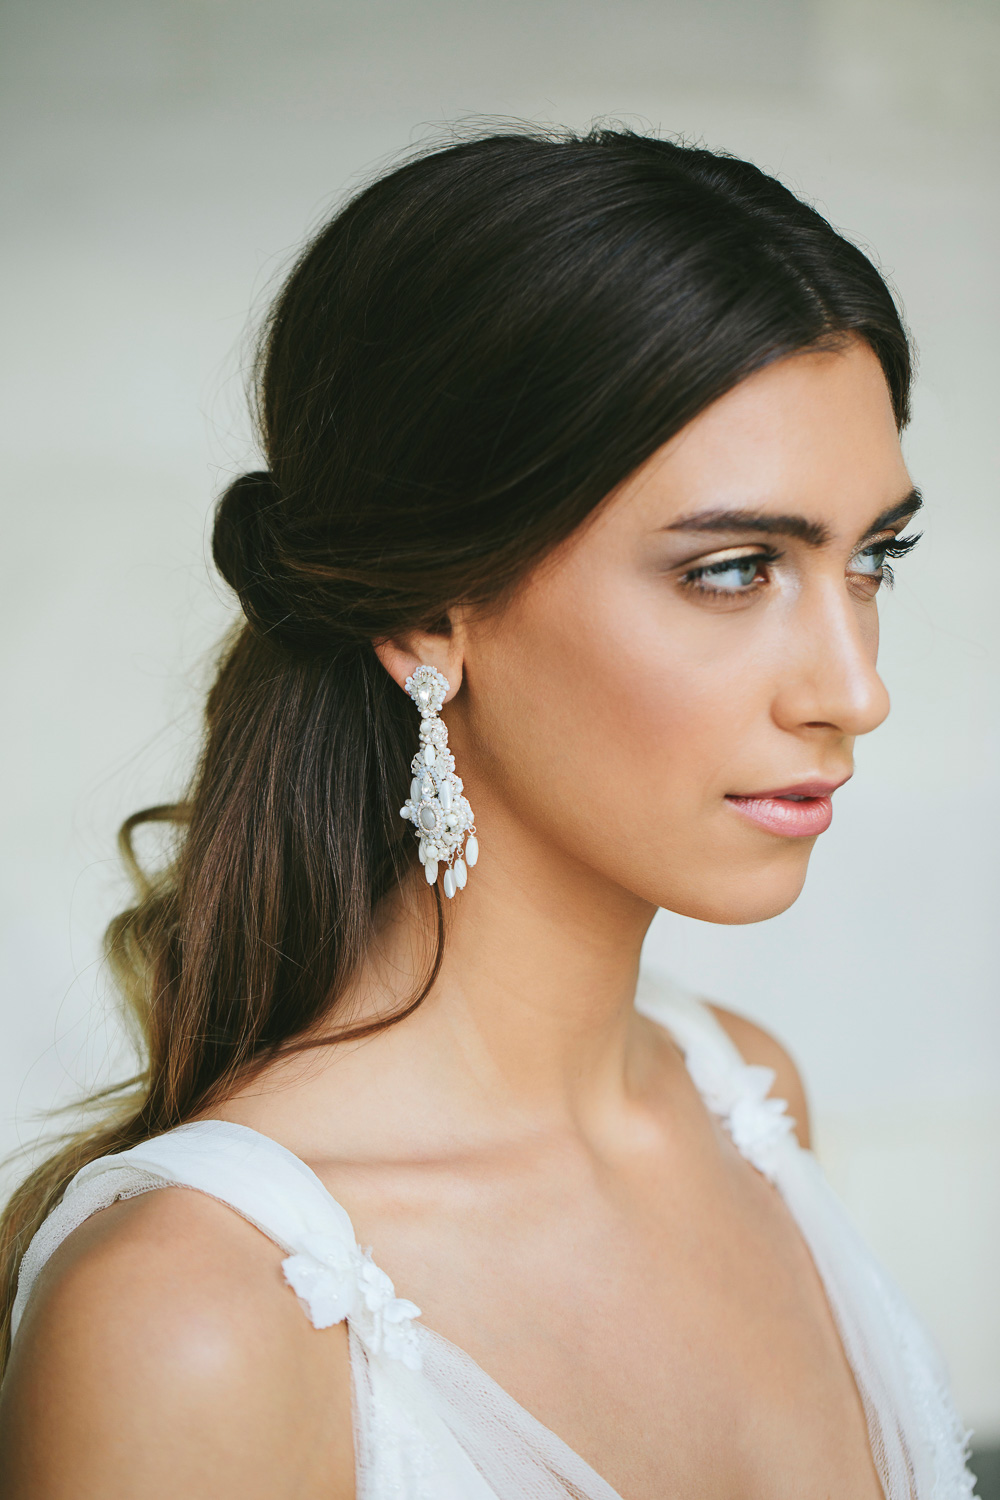 Buy Denifery Handmade Chandelier Earrings Gold Bridal Earrings Wedding  Dangle Earrings Statement Crystal and Pearl Earrings Rhinestone Earrings  Jewelry for Women and Girls at Amazonin